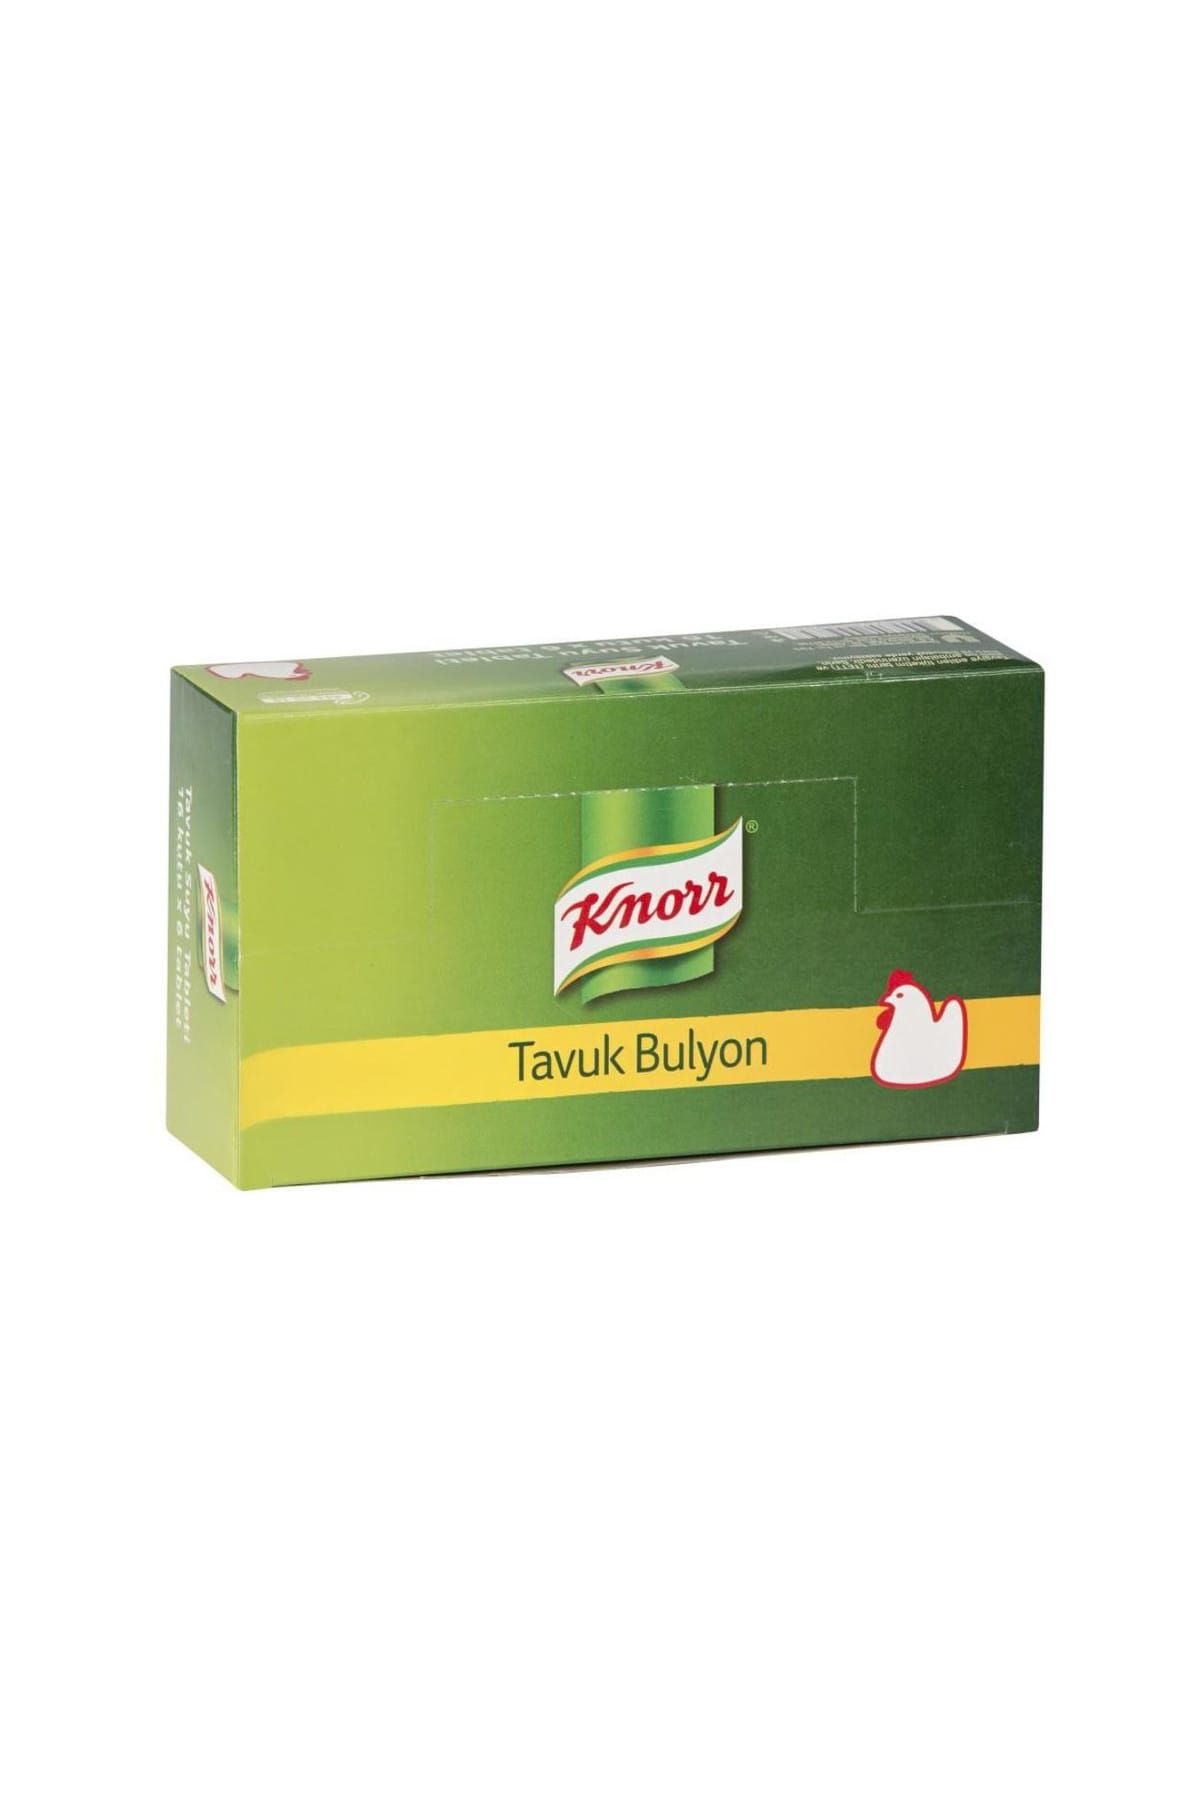 Knorr Tavuk Bulyon 60 Gr (16 Adet)